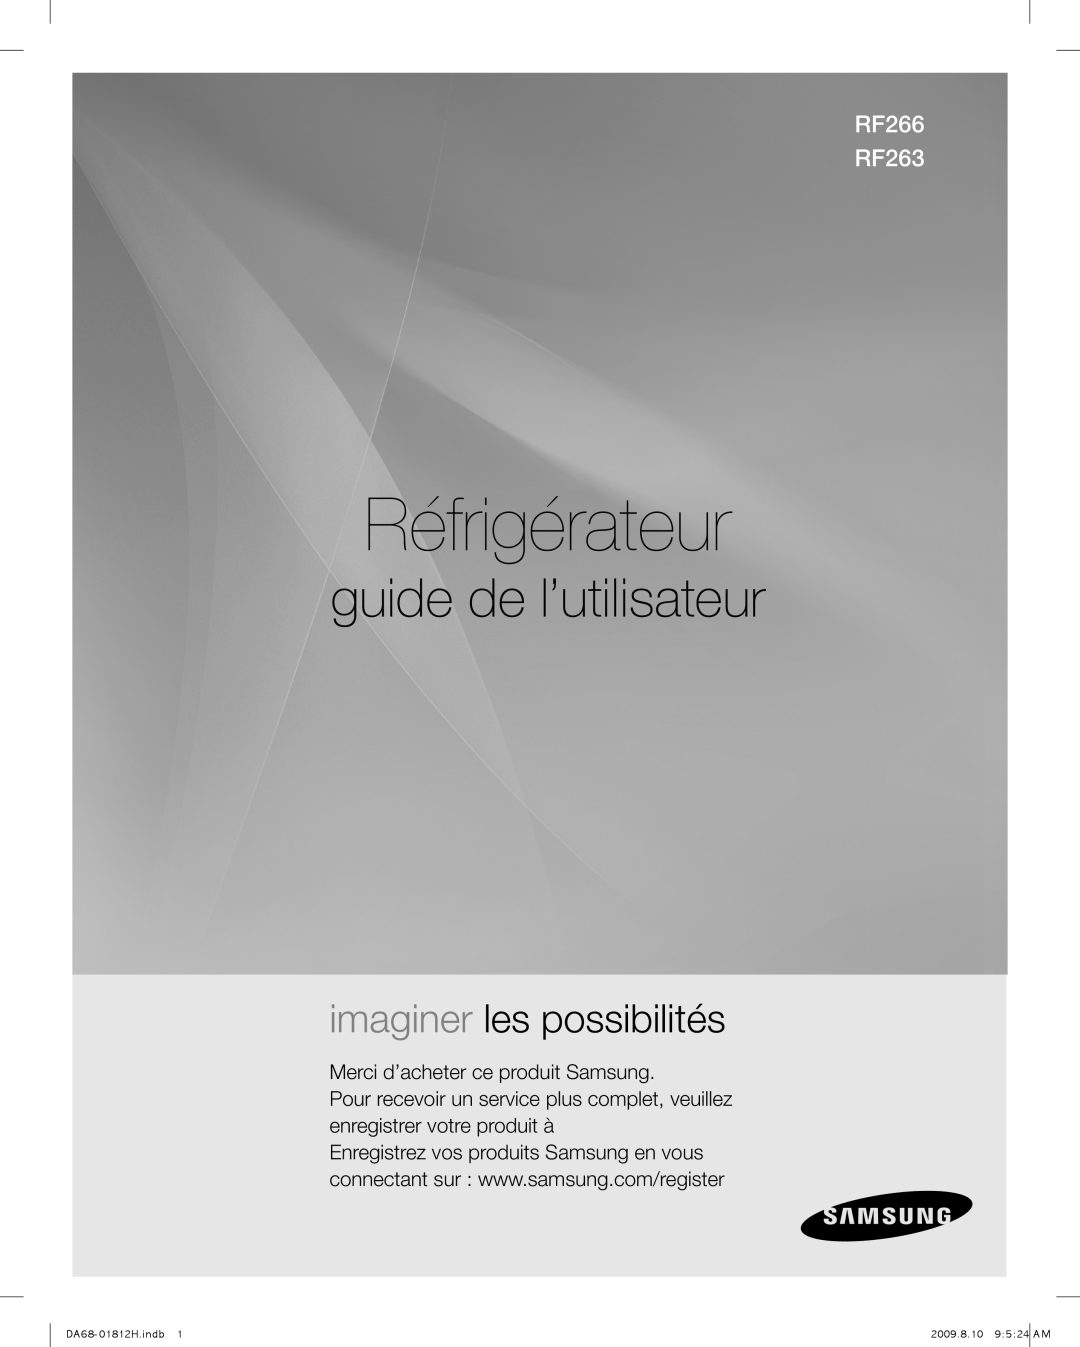 Samsung RF263AFBP, RF266AFBP, DA68-01812H Réfrigérateur, guide de l’utilisateur, imaginer les possibilités, RF266 RF263 